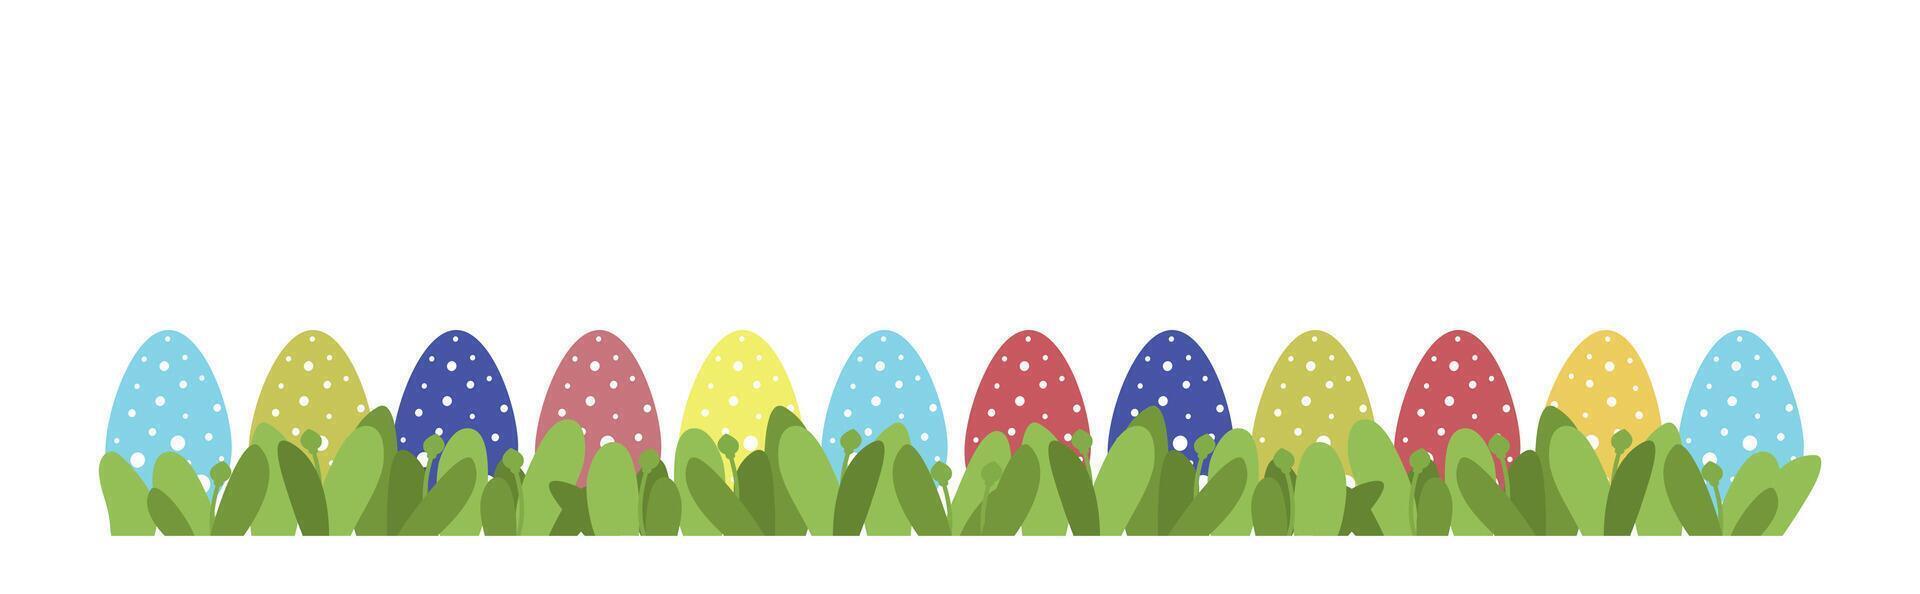 contento Pascua de Resurrección huevos en césped bandera. vistoso Pascua de Resurrección horizontal antecedentes con césped. vector